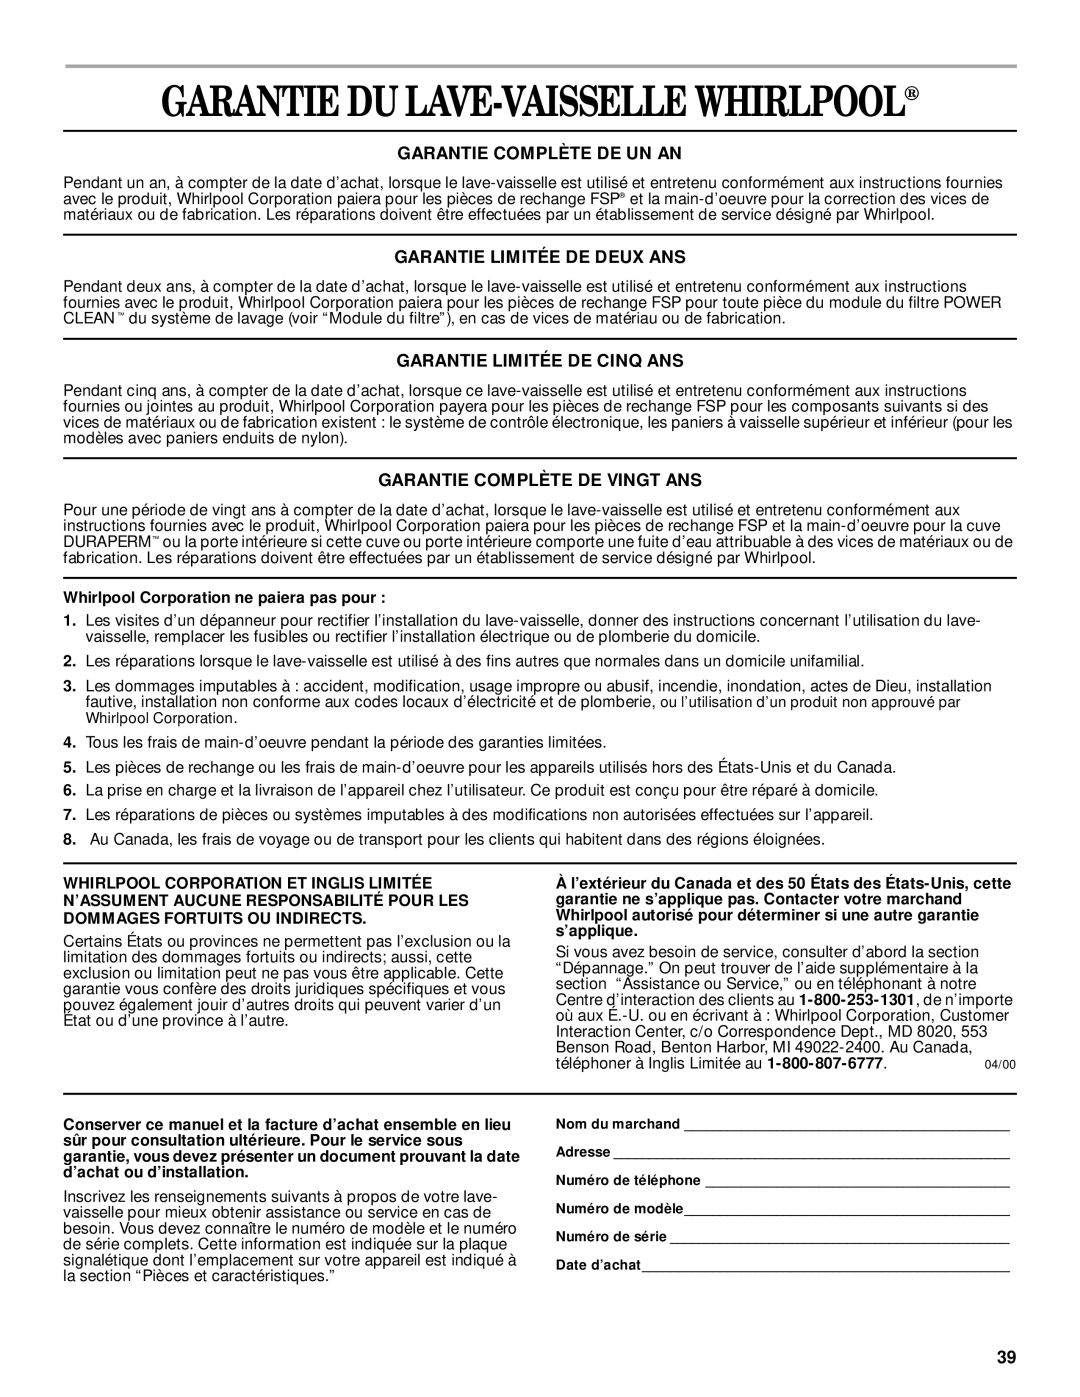 Whirlpool 931, 1000 manual Garantie Du Lave-Vaisselle Whirlpool, Garantie Complète De Un An, Garantie Limitée De Deux Ans 